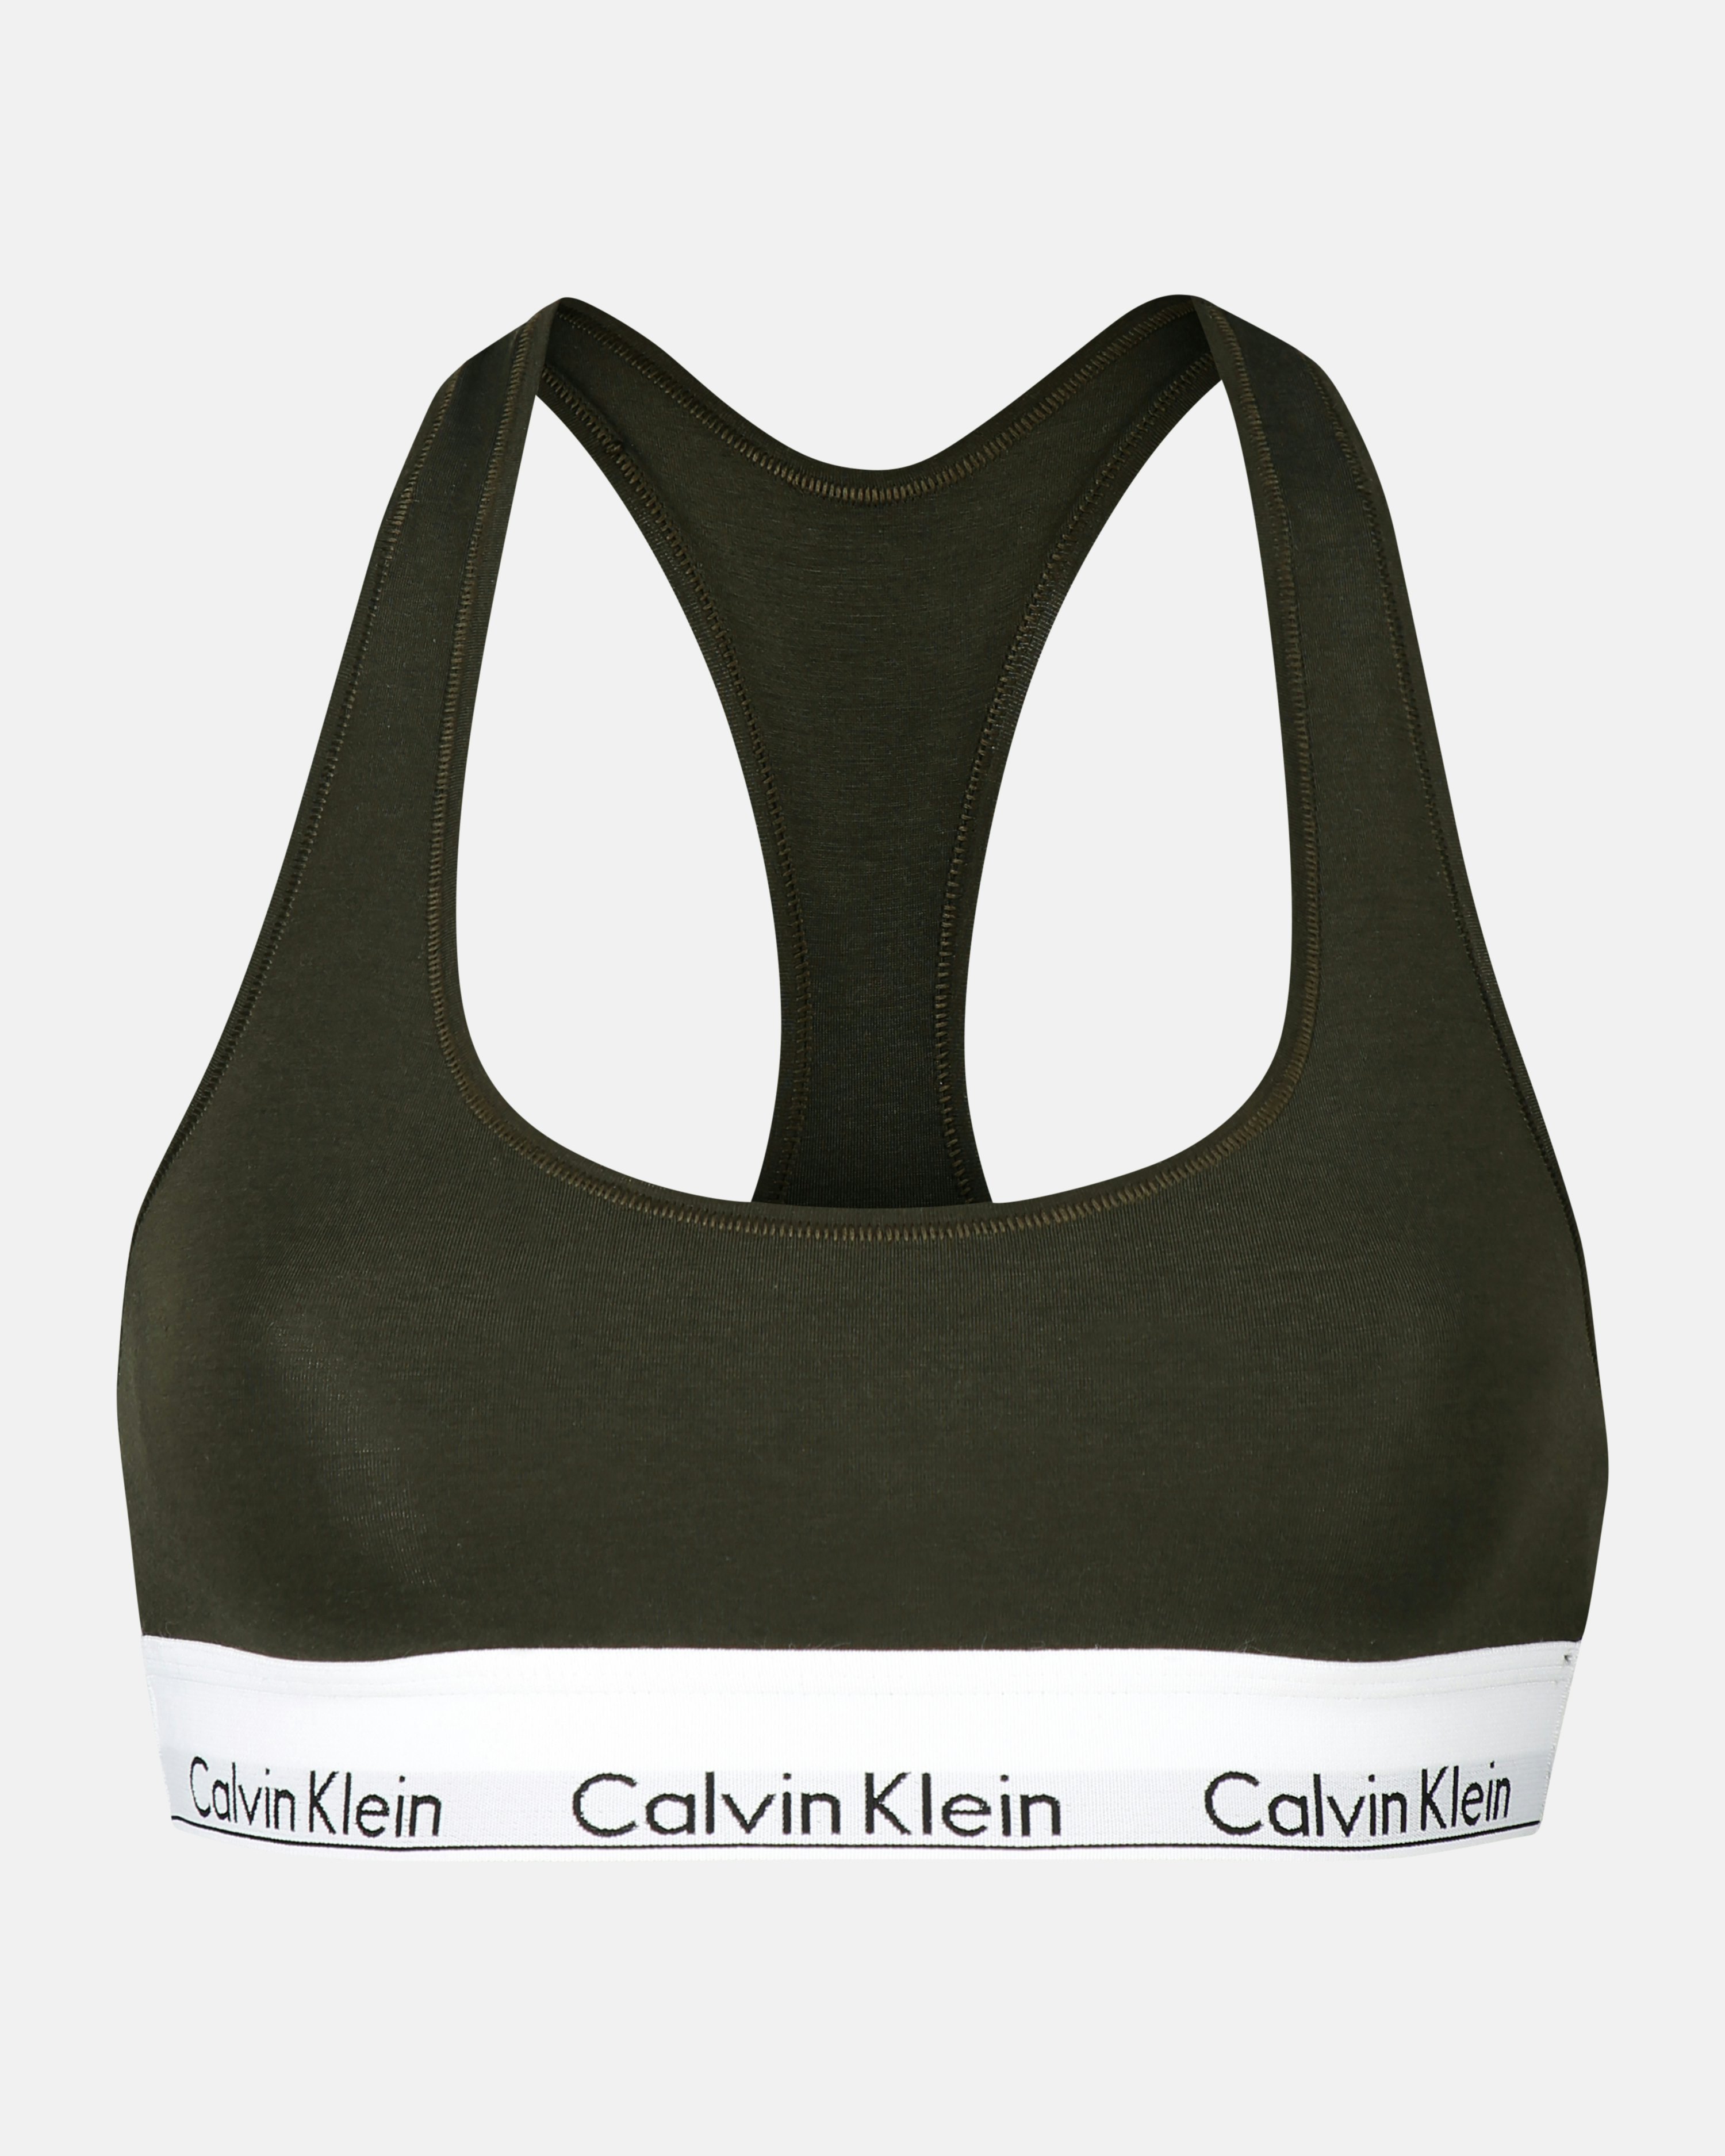 Calvin Klein Underwear Unlined Bra Olive green, Women